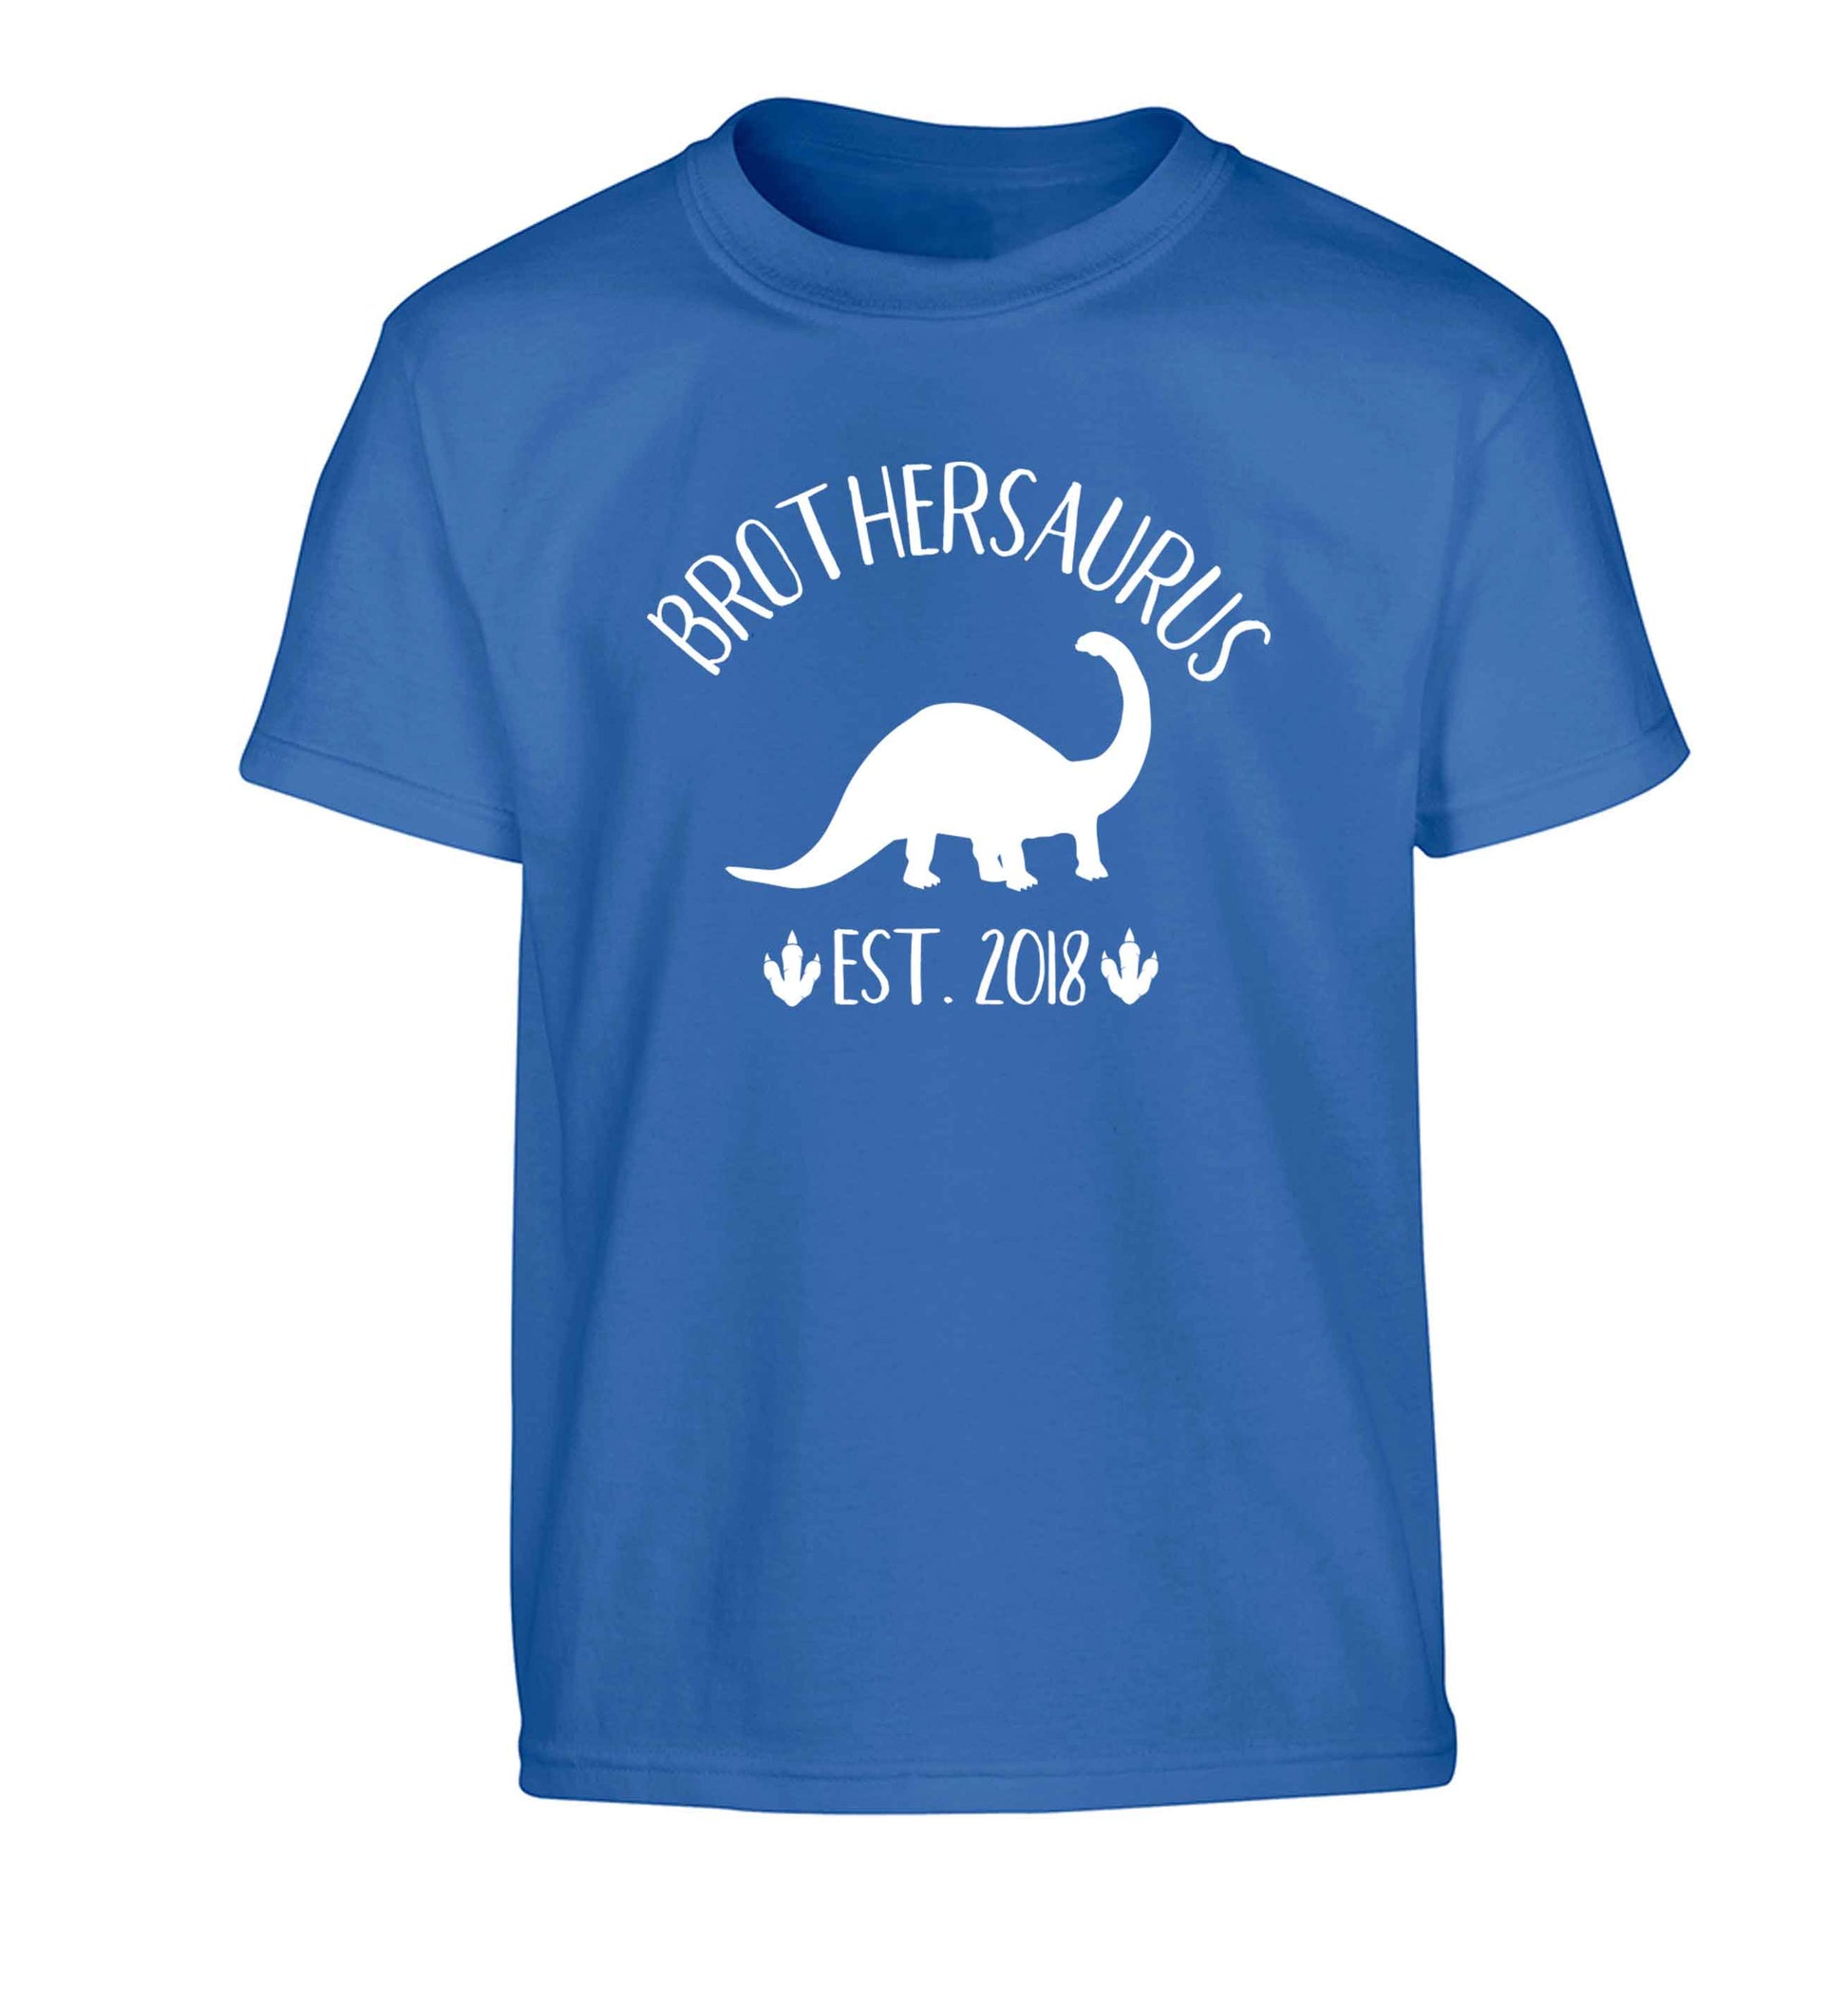 Personalised brothersaurus since (custom date) Children's blue Tshirt 12-13 Years